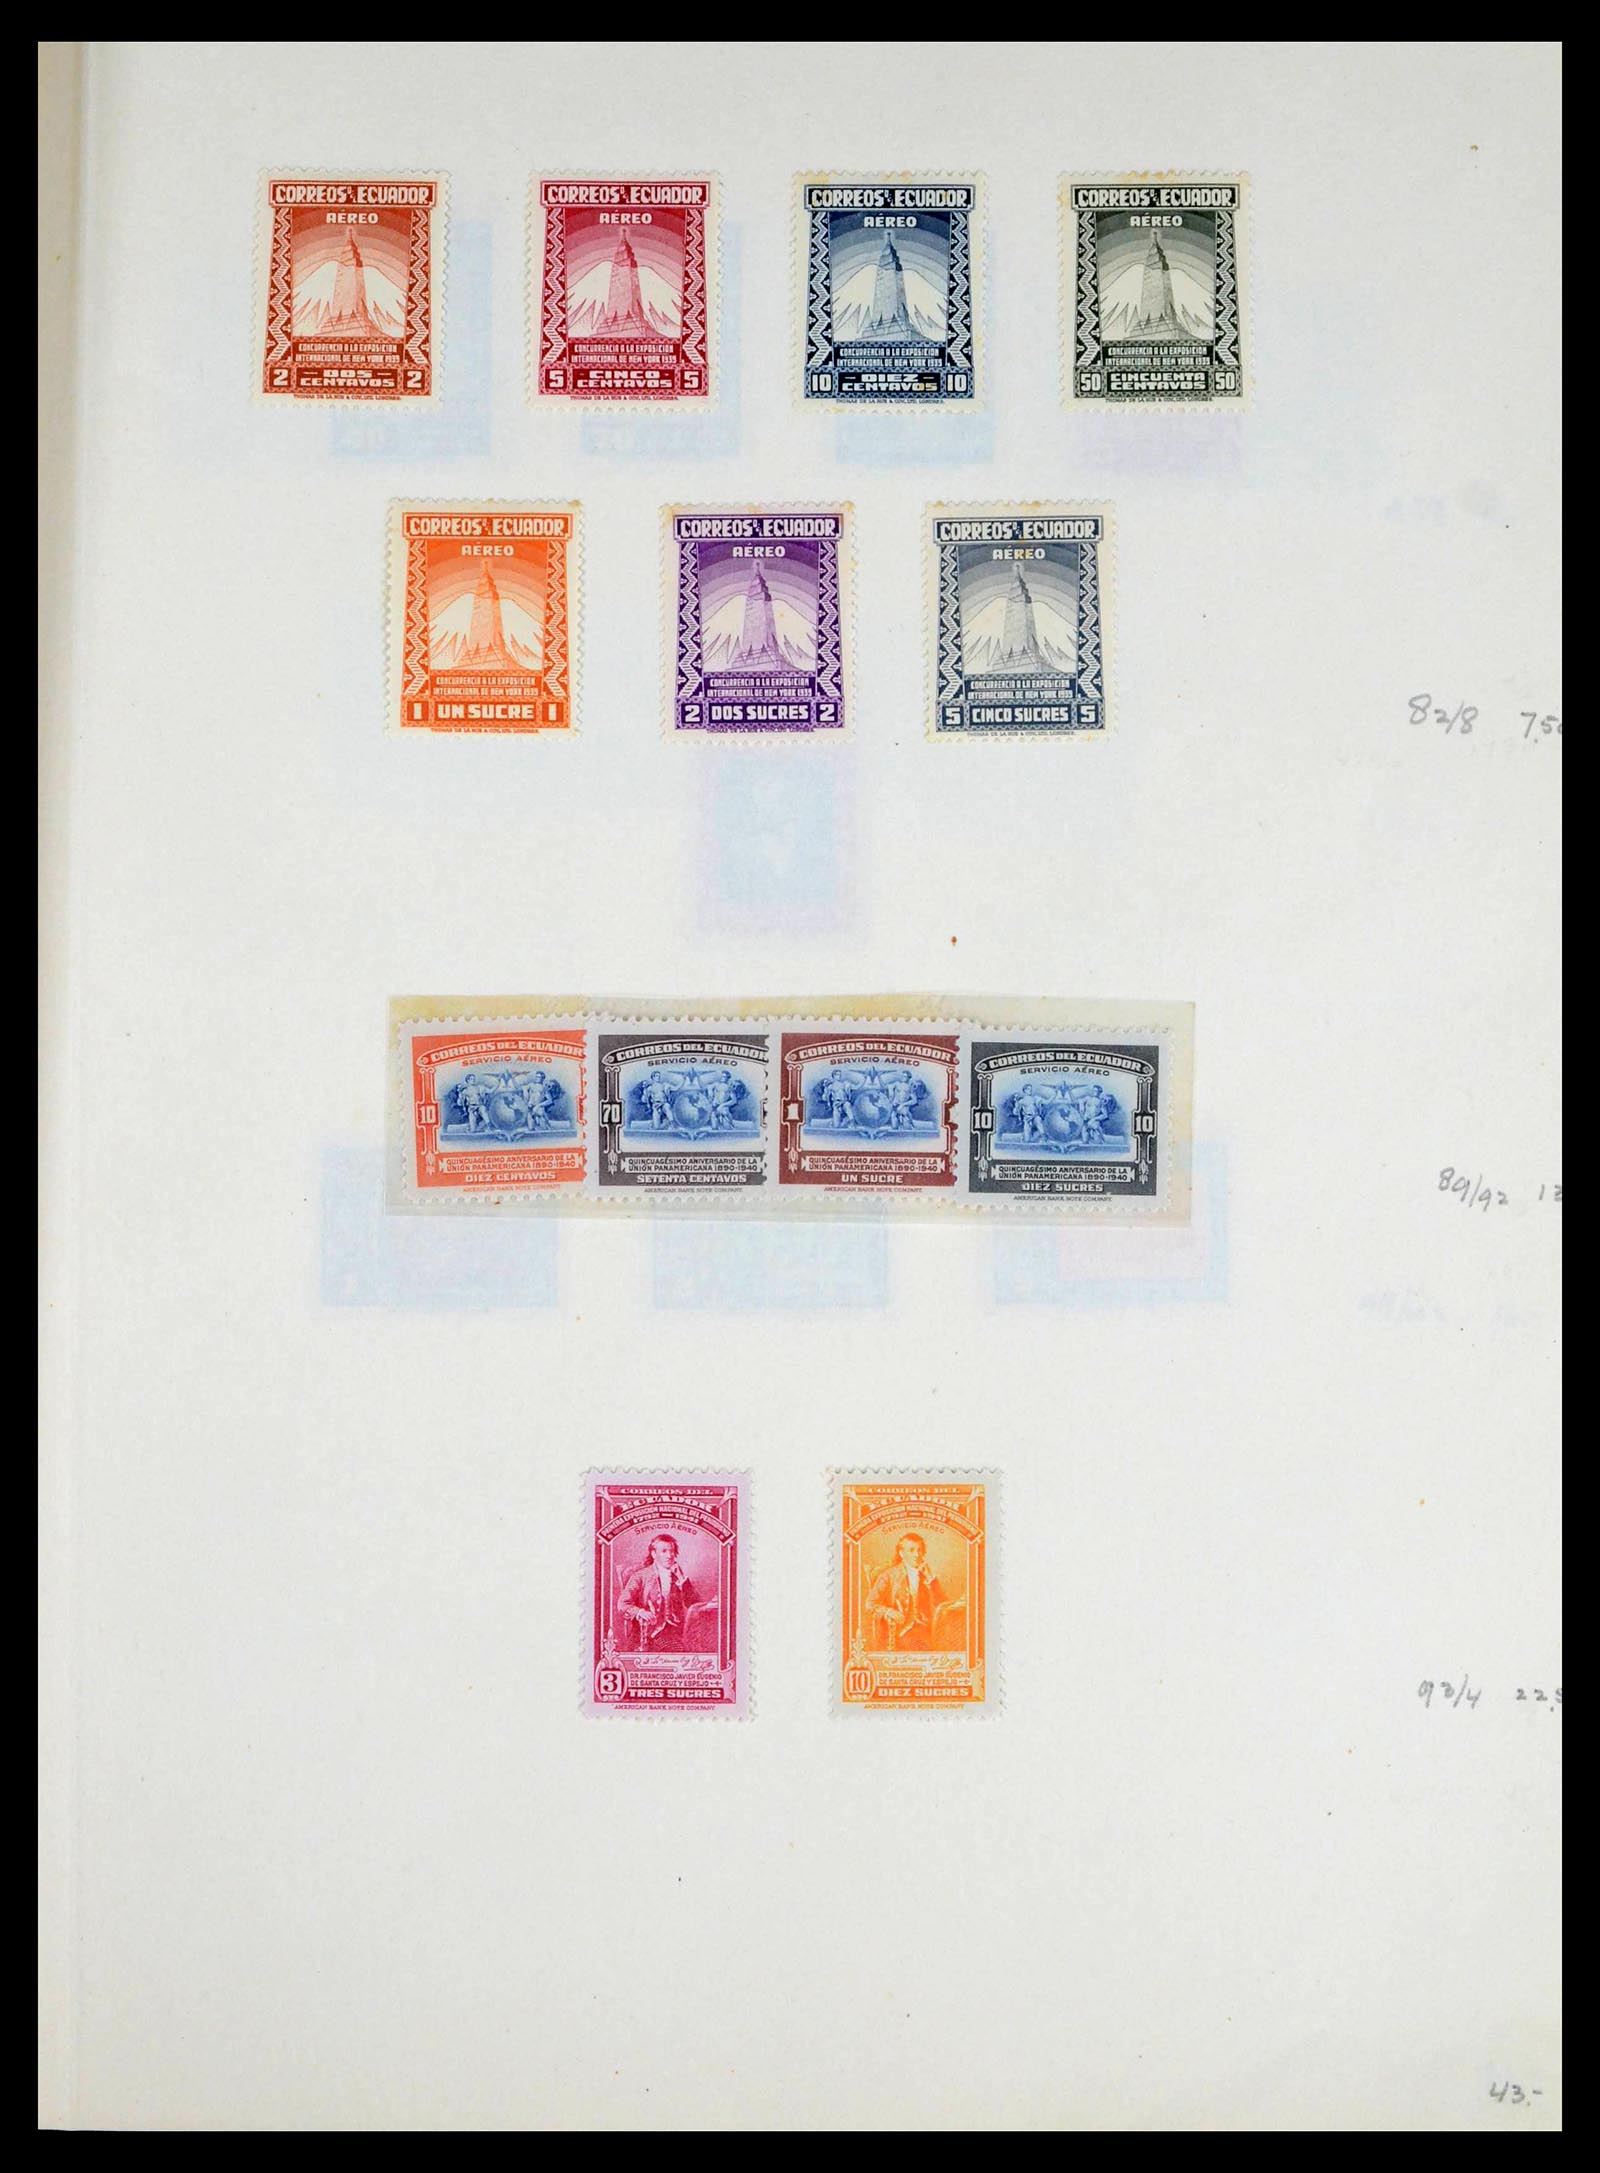 39456 0007 - Stamp collection 39456 Ecuador 1865-1960.